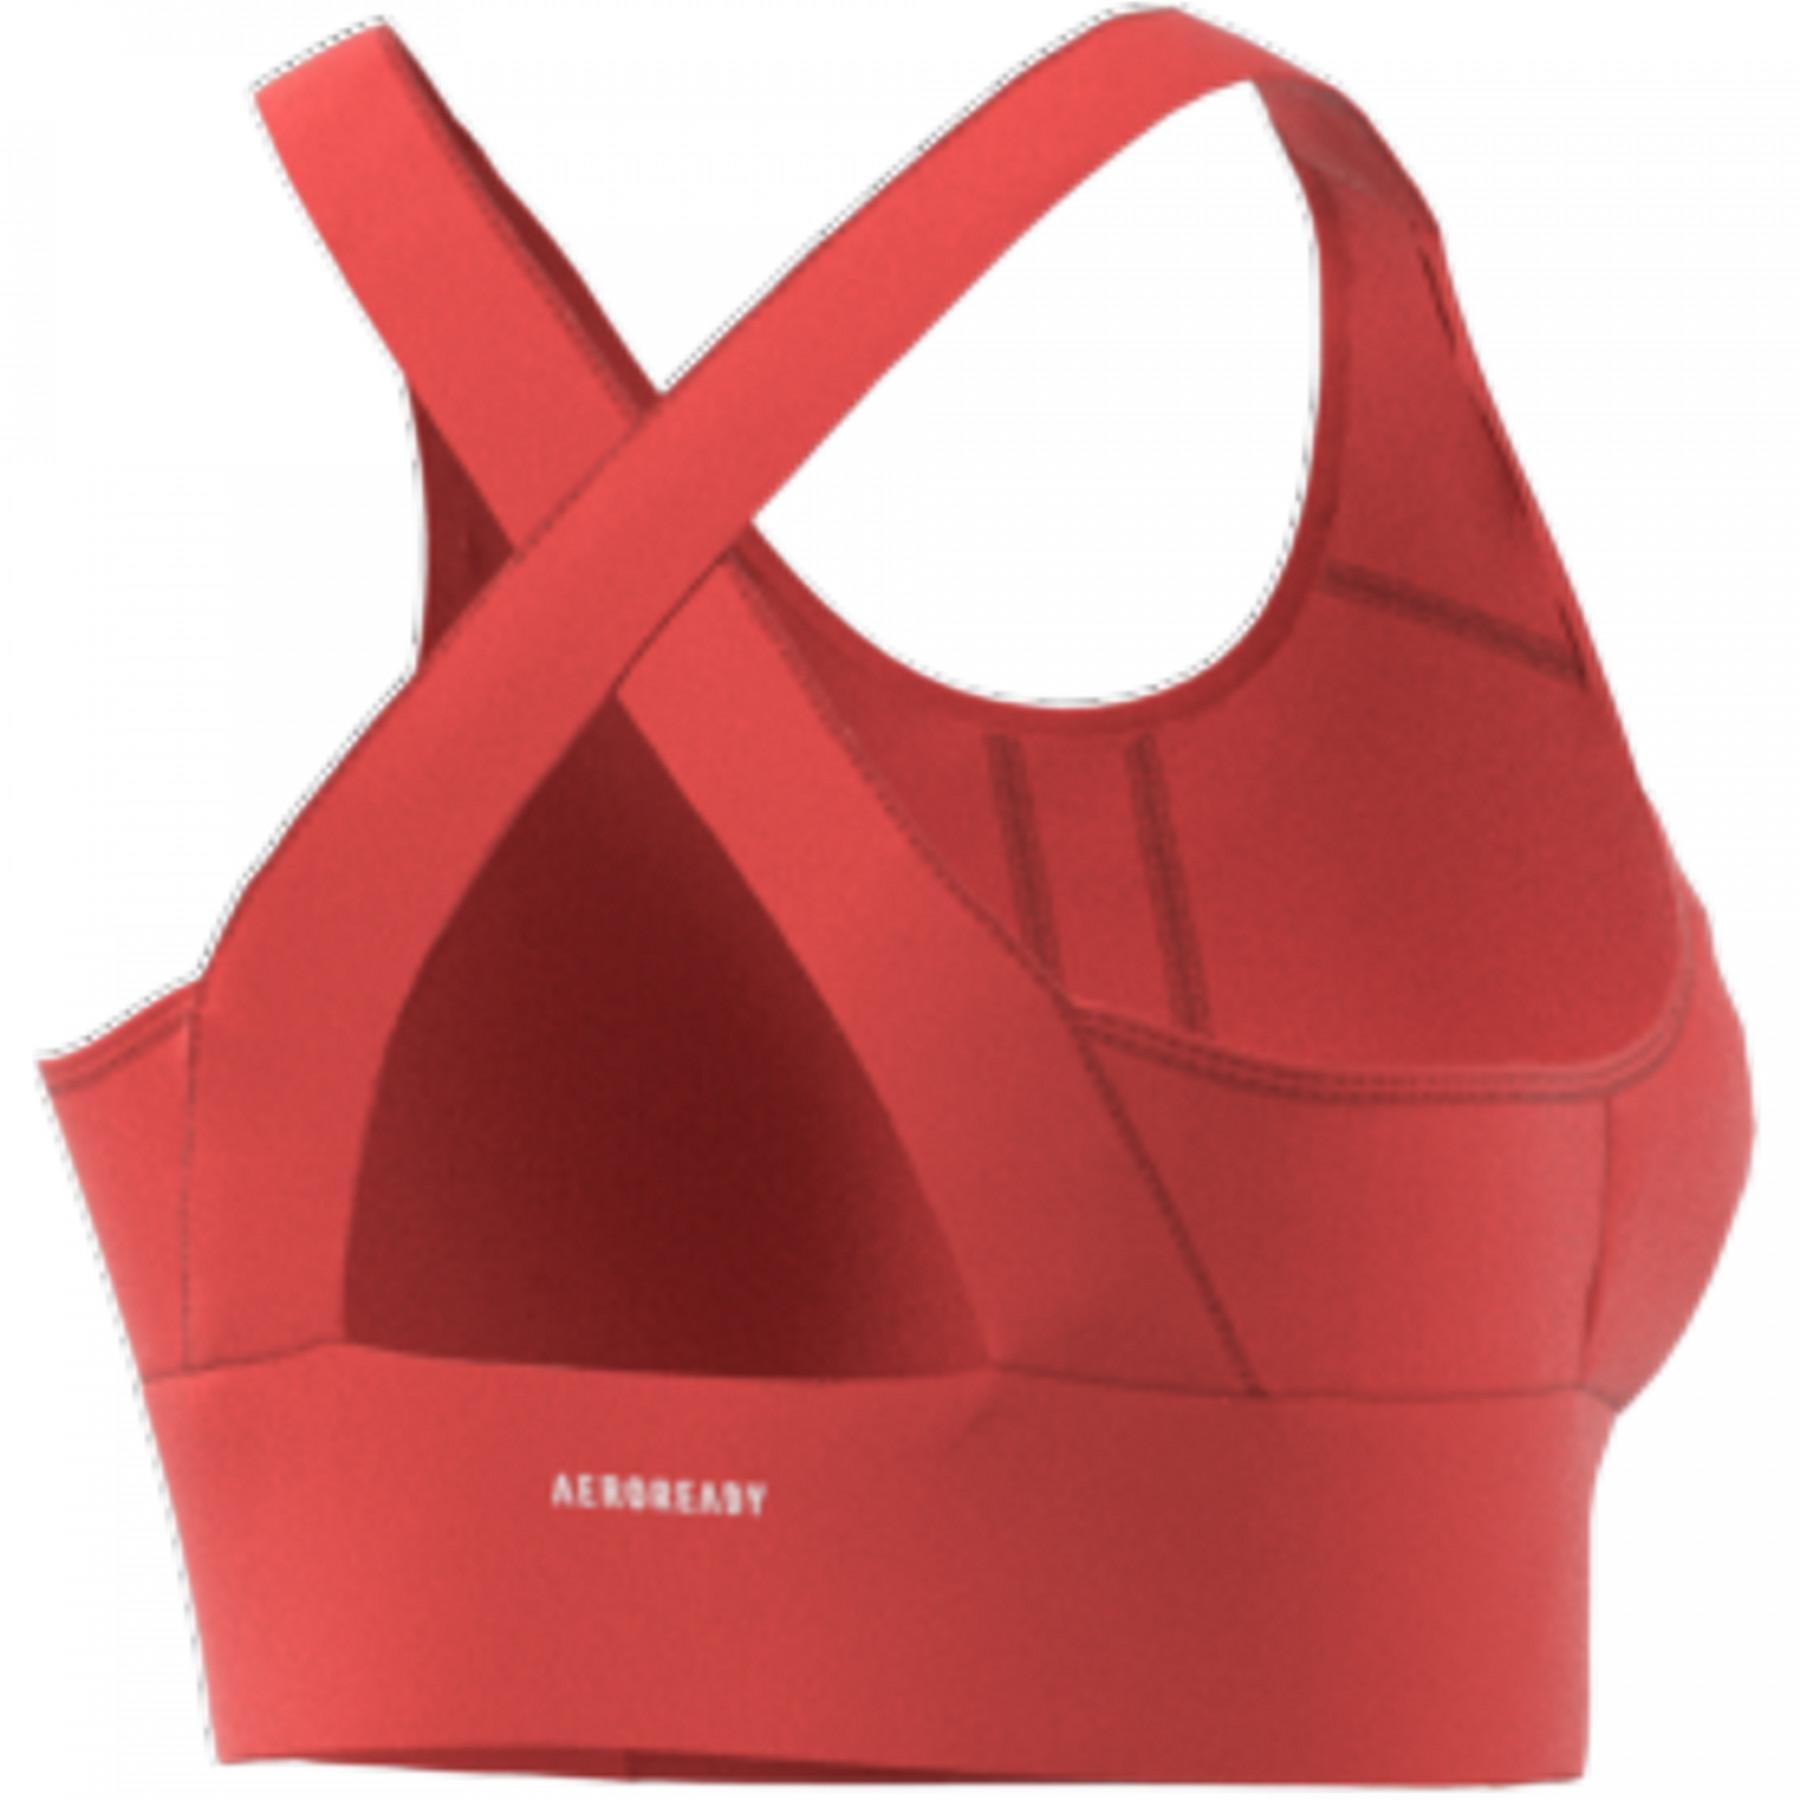 Women's lightweight support bra adidas Designed To Move Aeroready